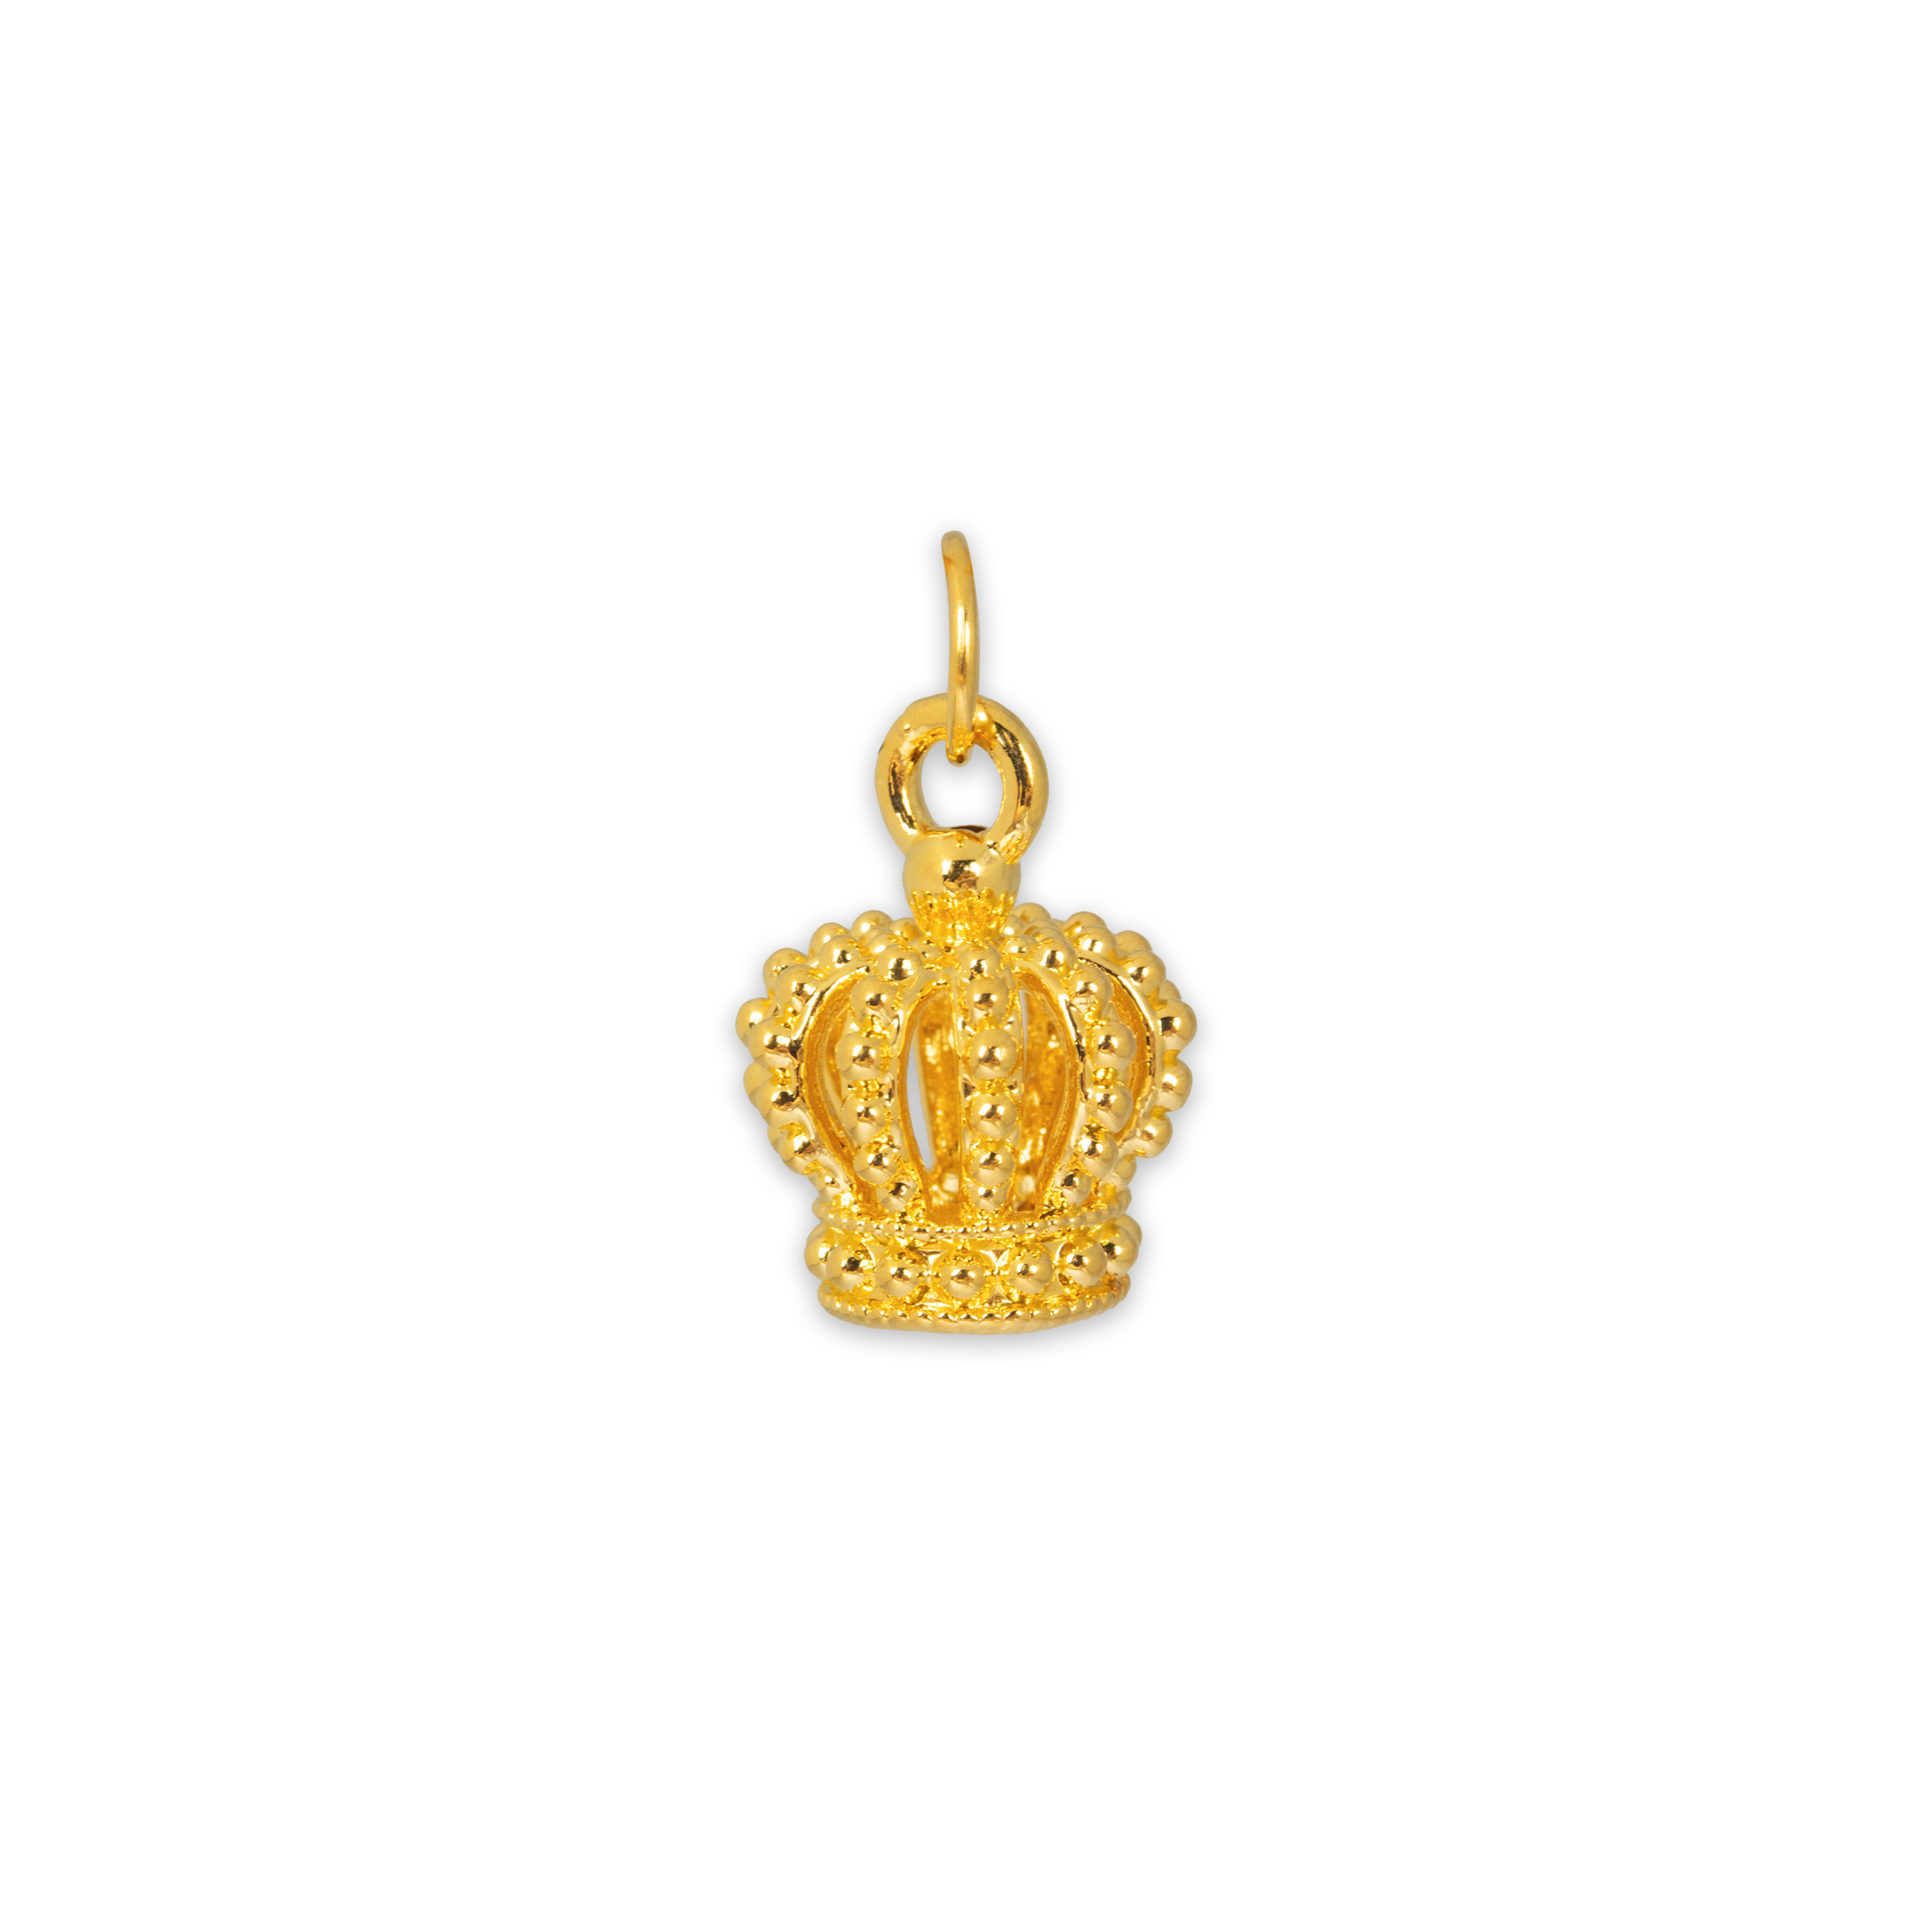 TIANSI 999 (24K) Gold Crown Pendant